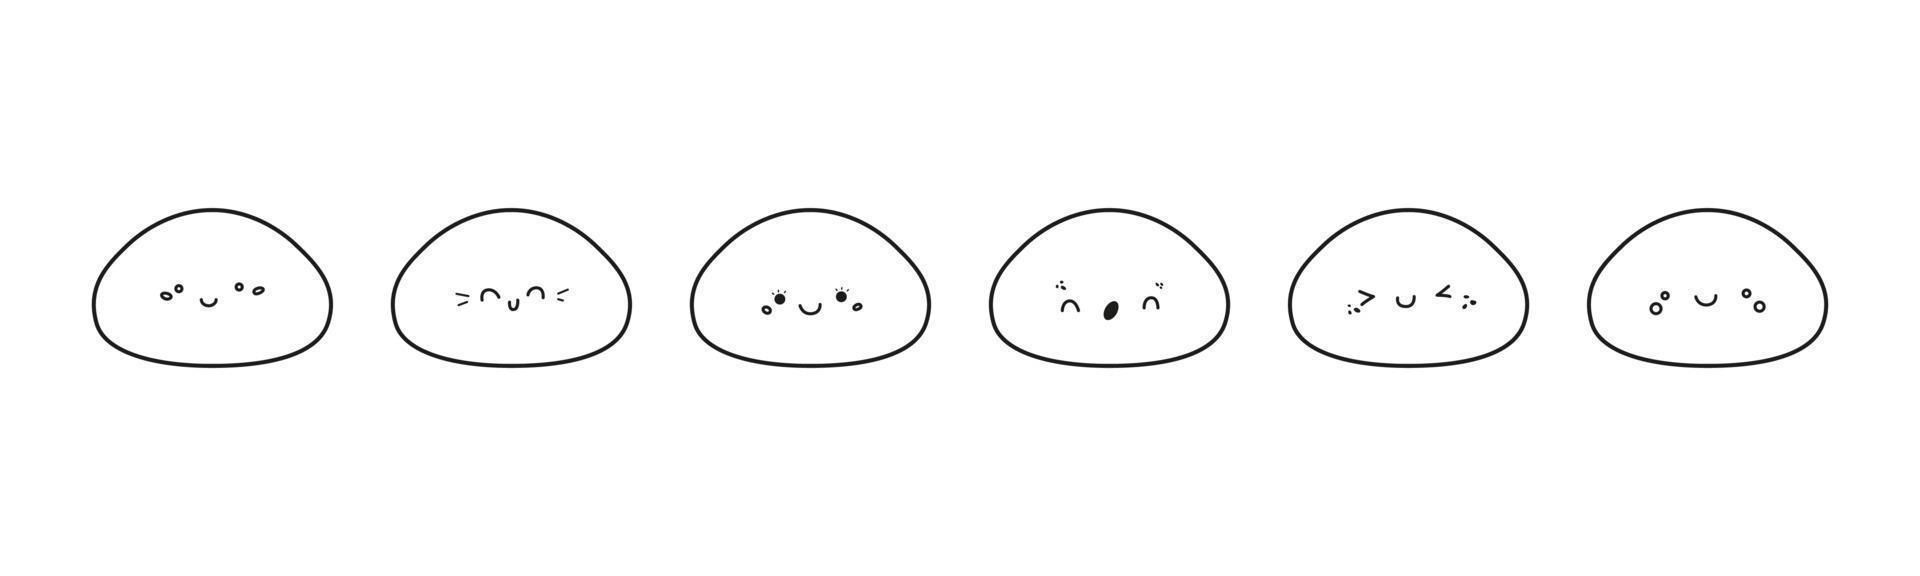 lindo conjunto de vectores de iconos mochi. personajes de dibujos animados con varias caras kawaii. postre de arroz dulce japonés al estilo garabato. Ilustración del logotipo de mochi aislado sobre fondo blanco.